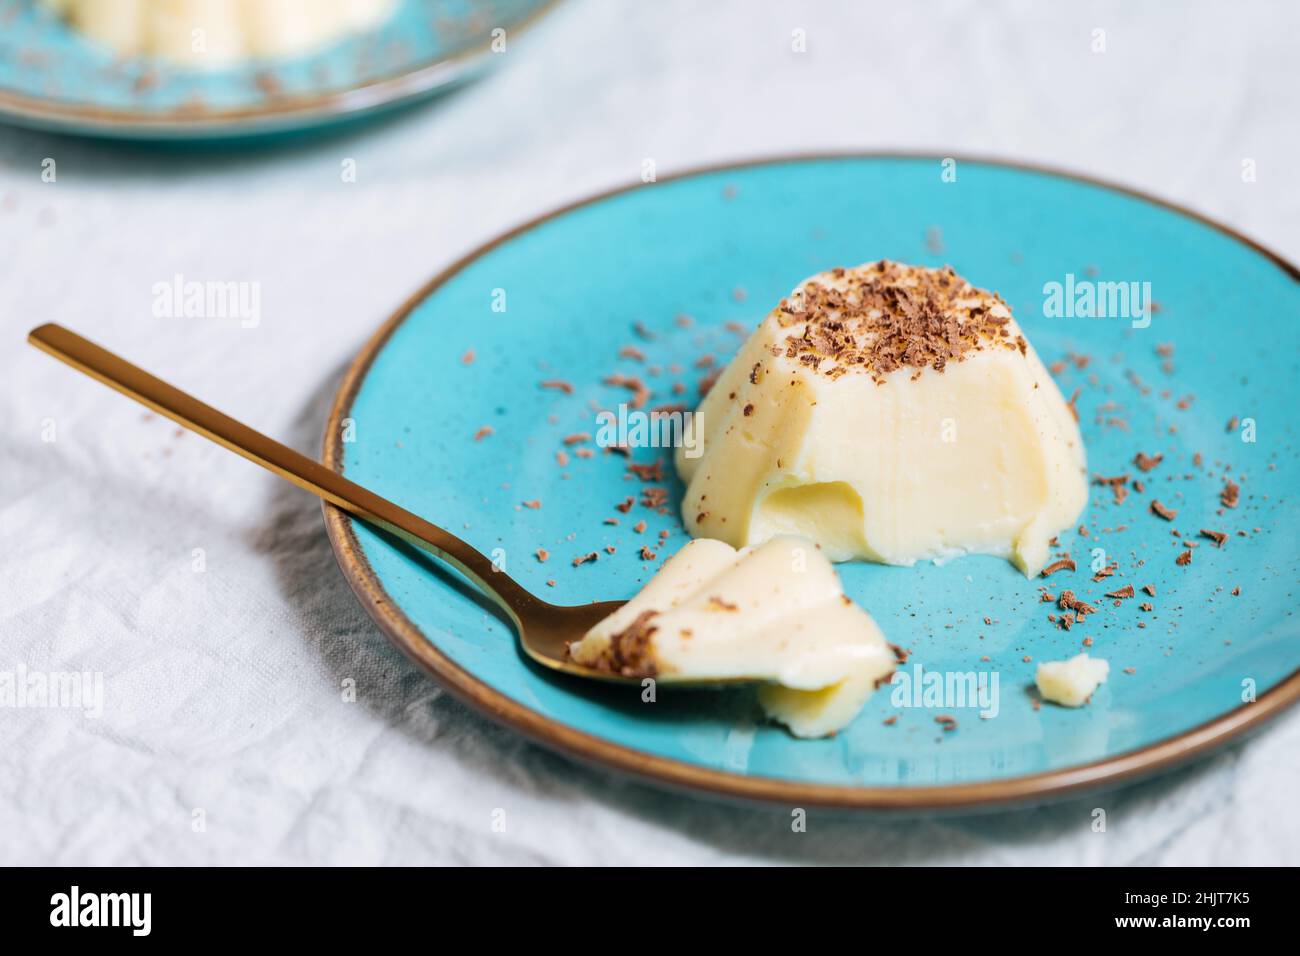 Budino di vaniglia su piastra di porcellana blu con briciole di cioccolato sulla parte superiore. Sfondo luminoso Foto Stock